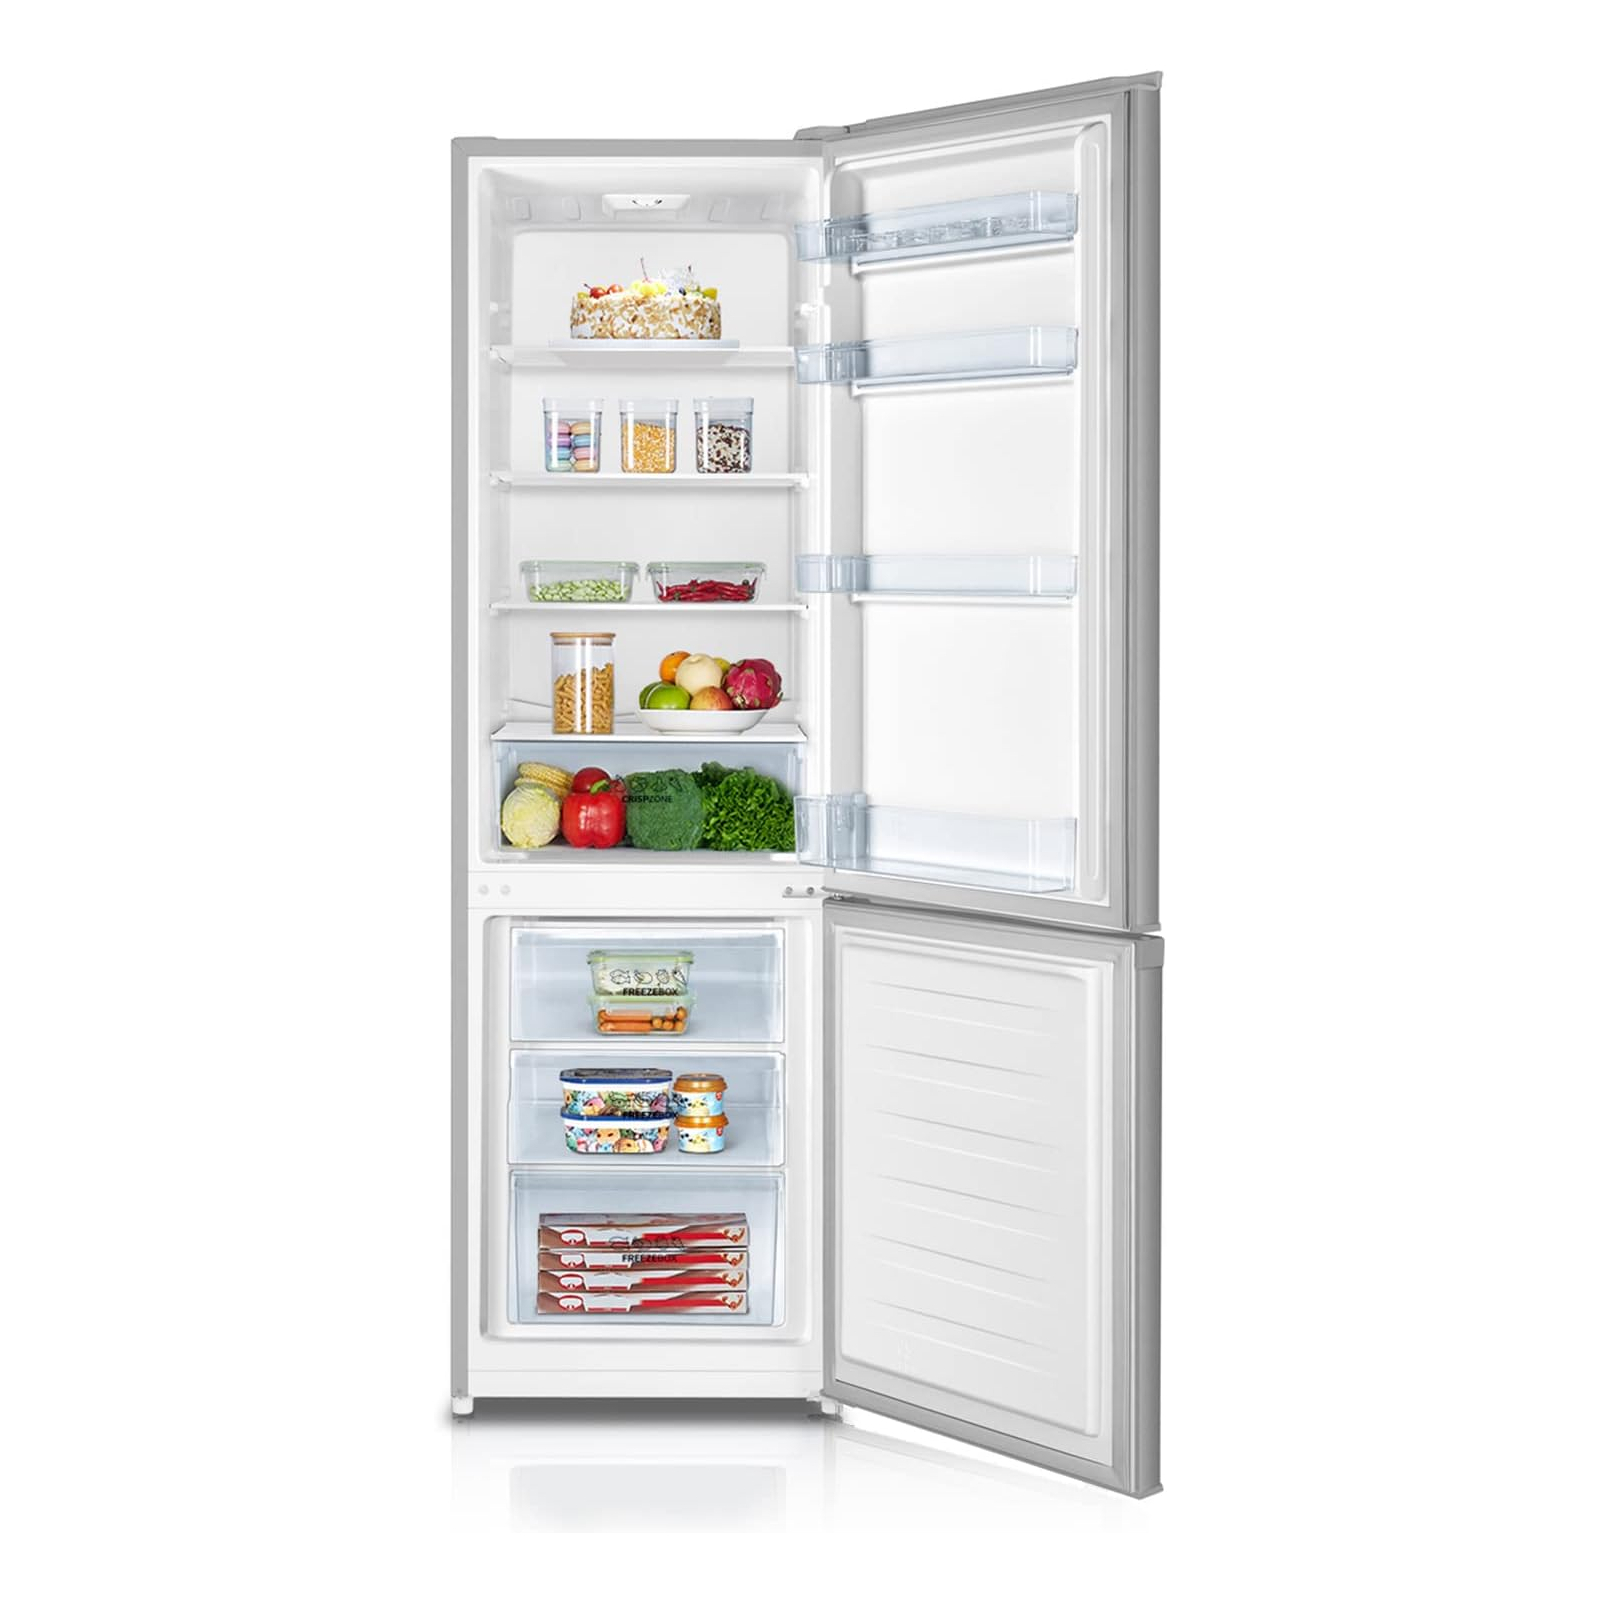 Холодильник Gorenje RK4182PS4 изображение 2